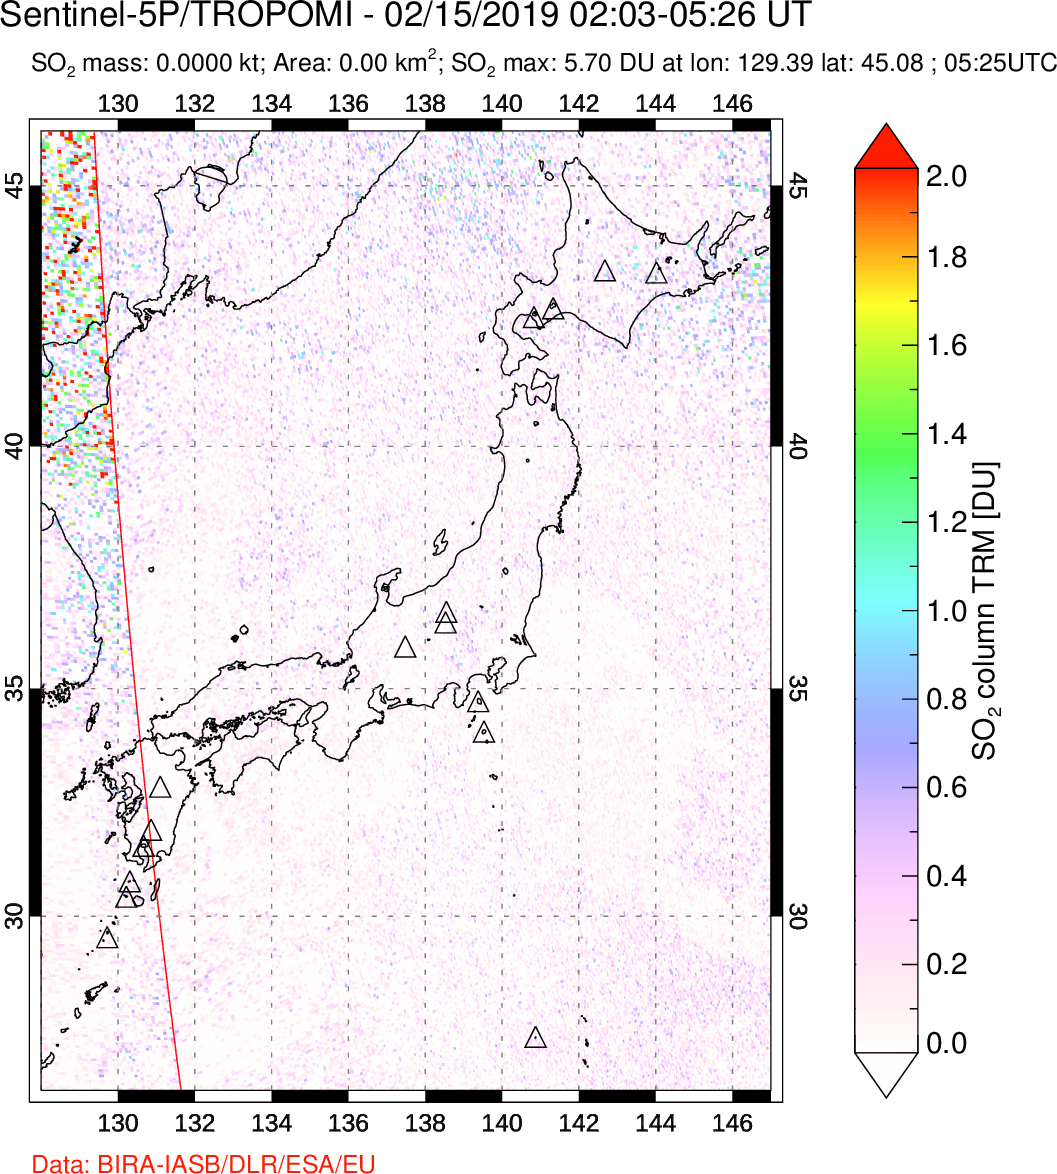 A sulfur dioxide image over Japan on Feb 15, 2019.